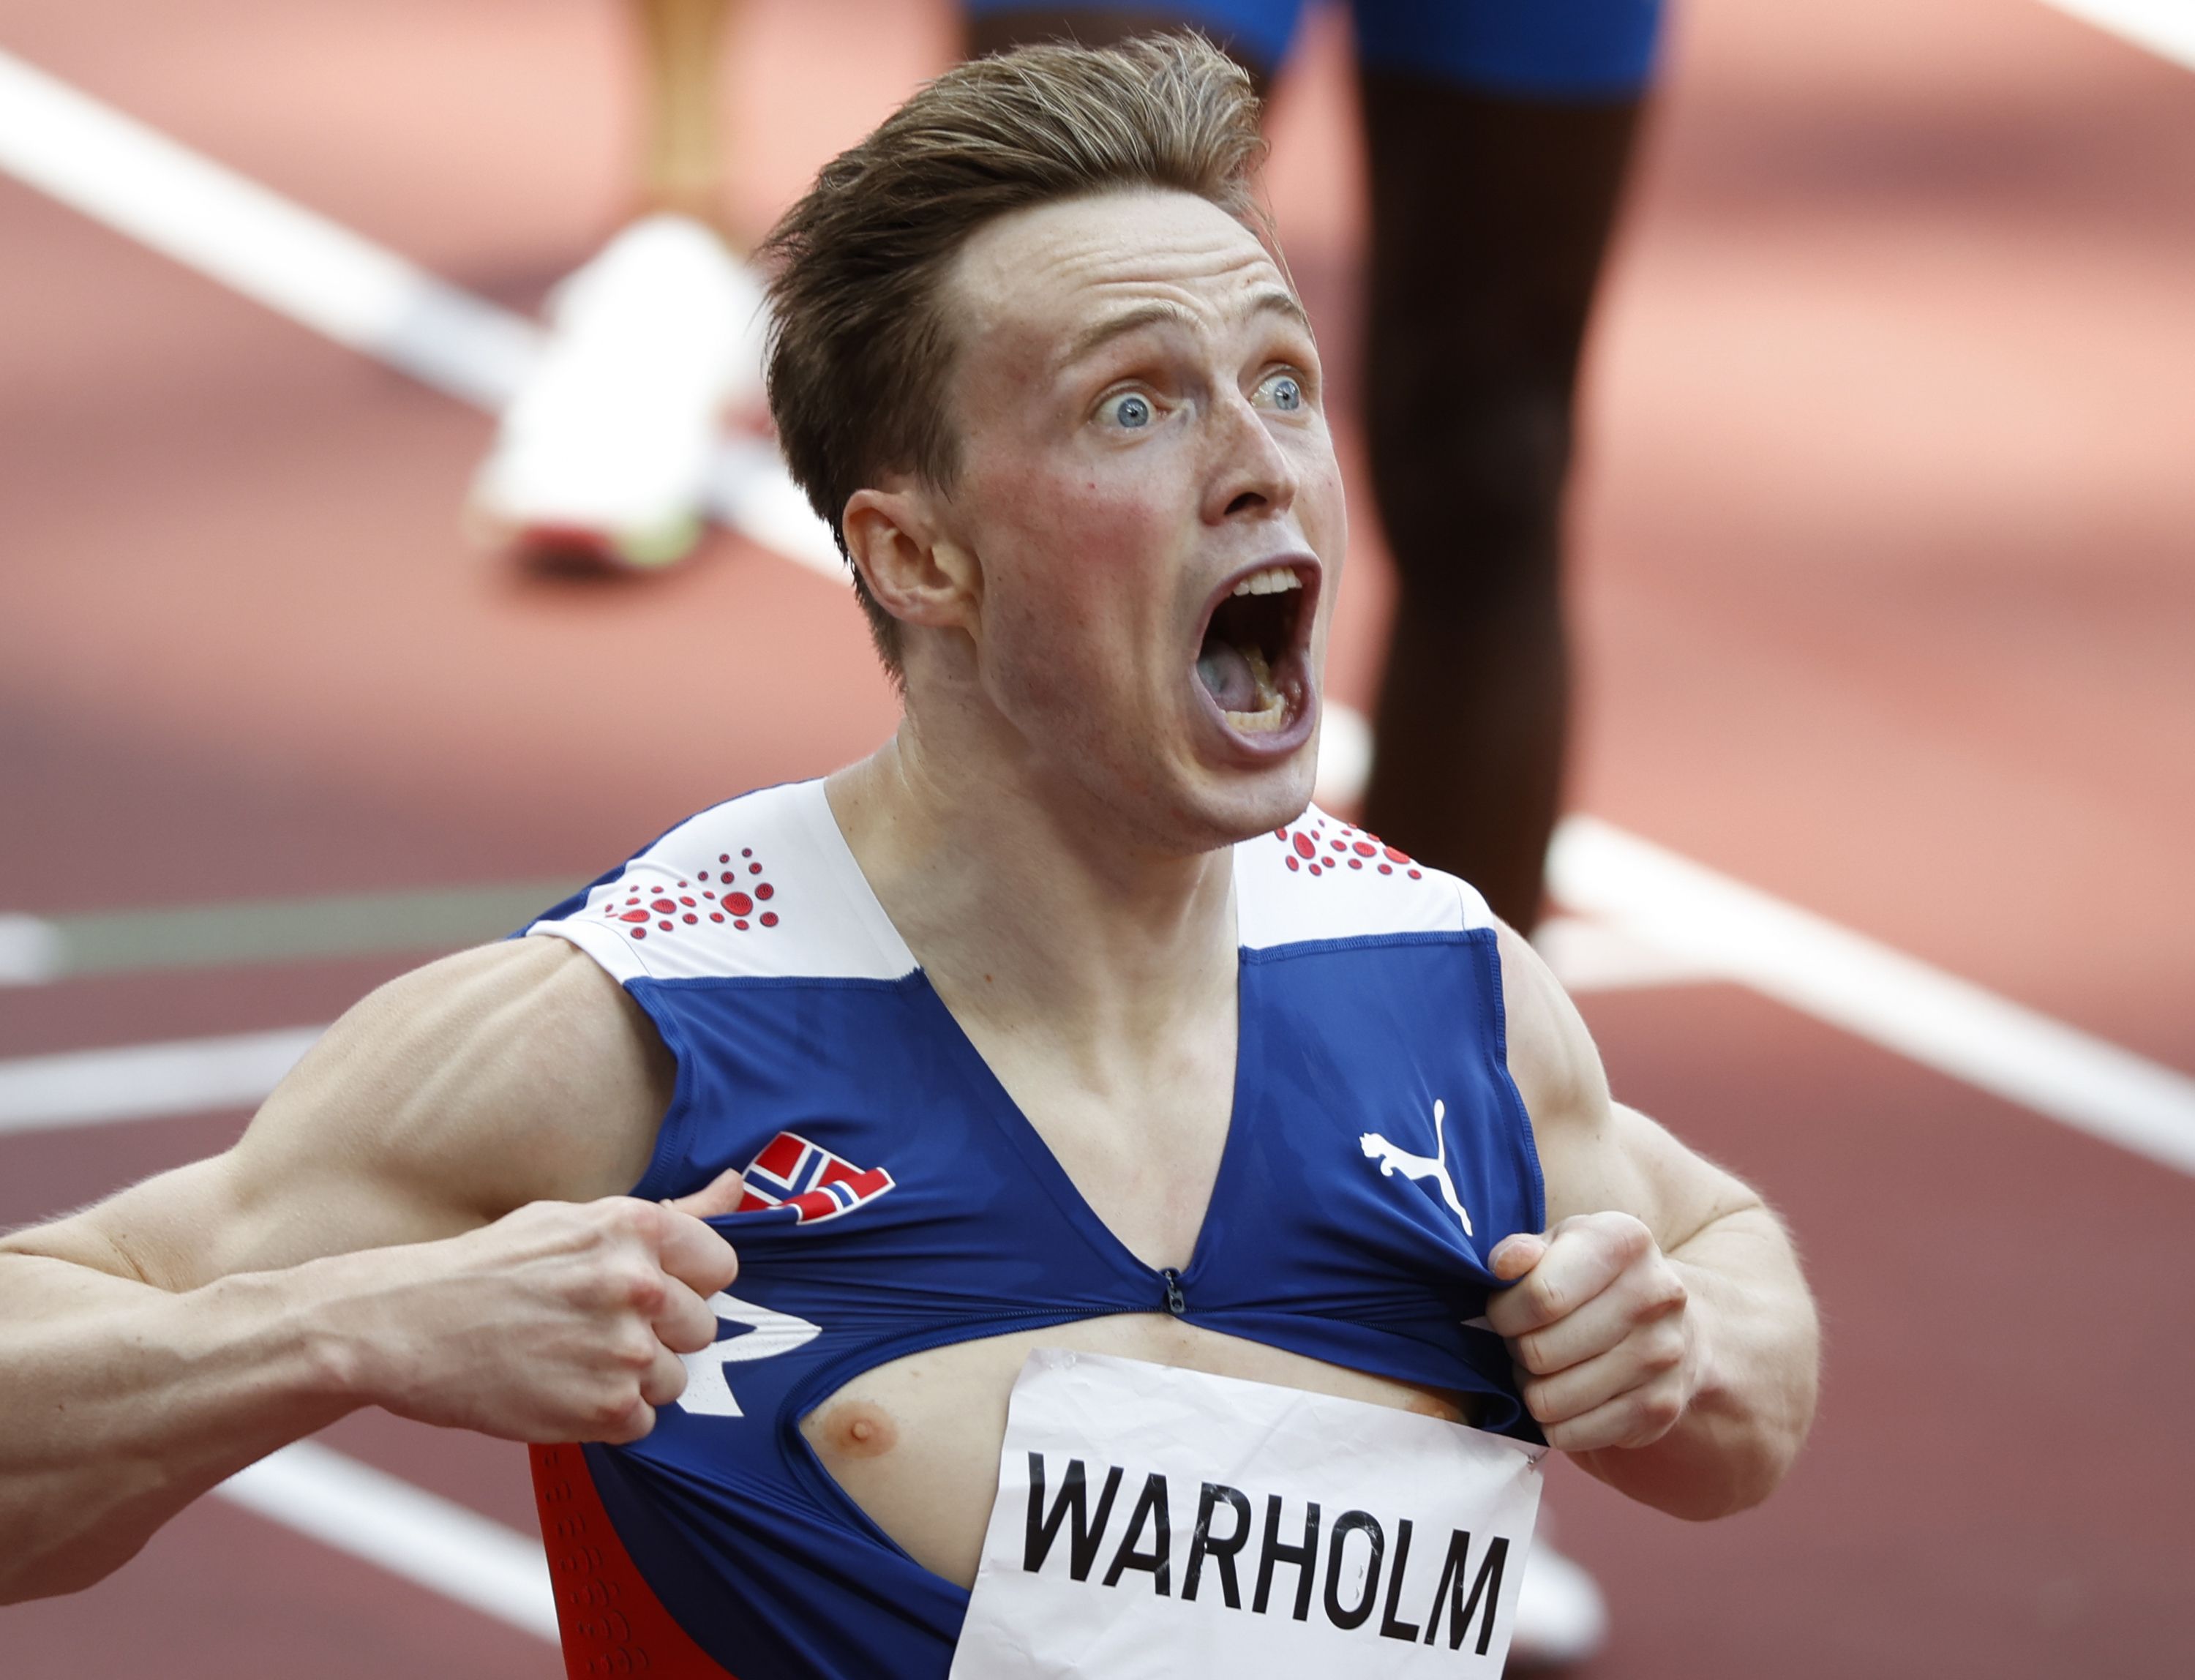 La alegría del atleta noruego lo llevó a romper su propio uniforme (Foto: Phil Noble/REUTERS)